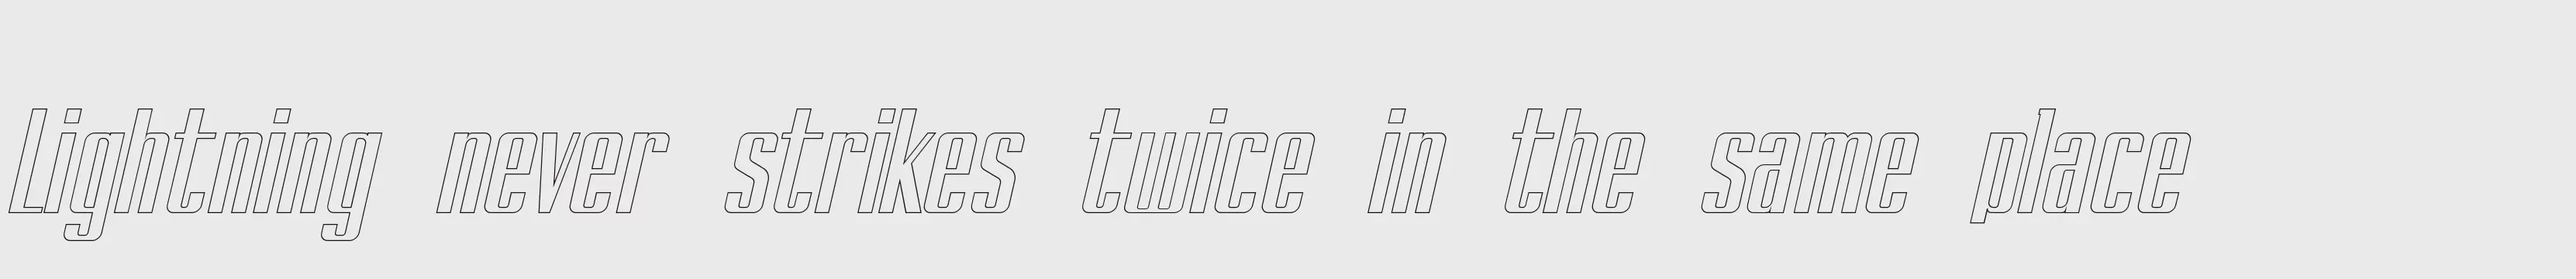 「BRANCHÉ Outline Italic Demo」字体效果图